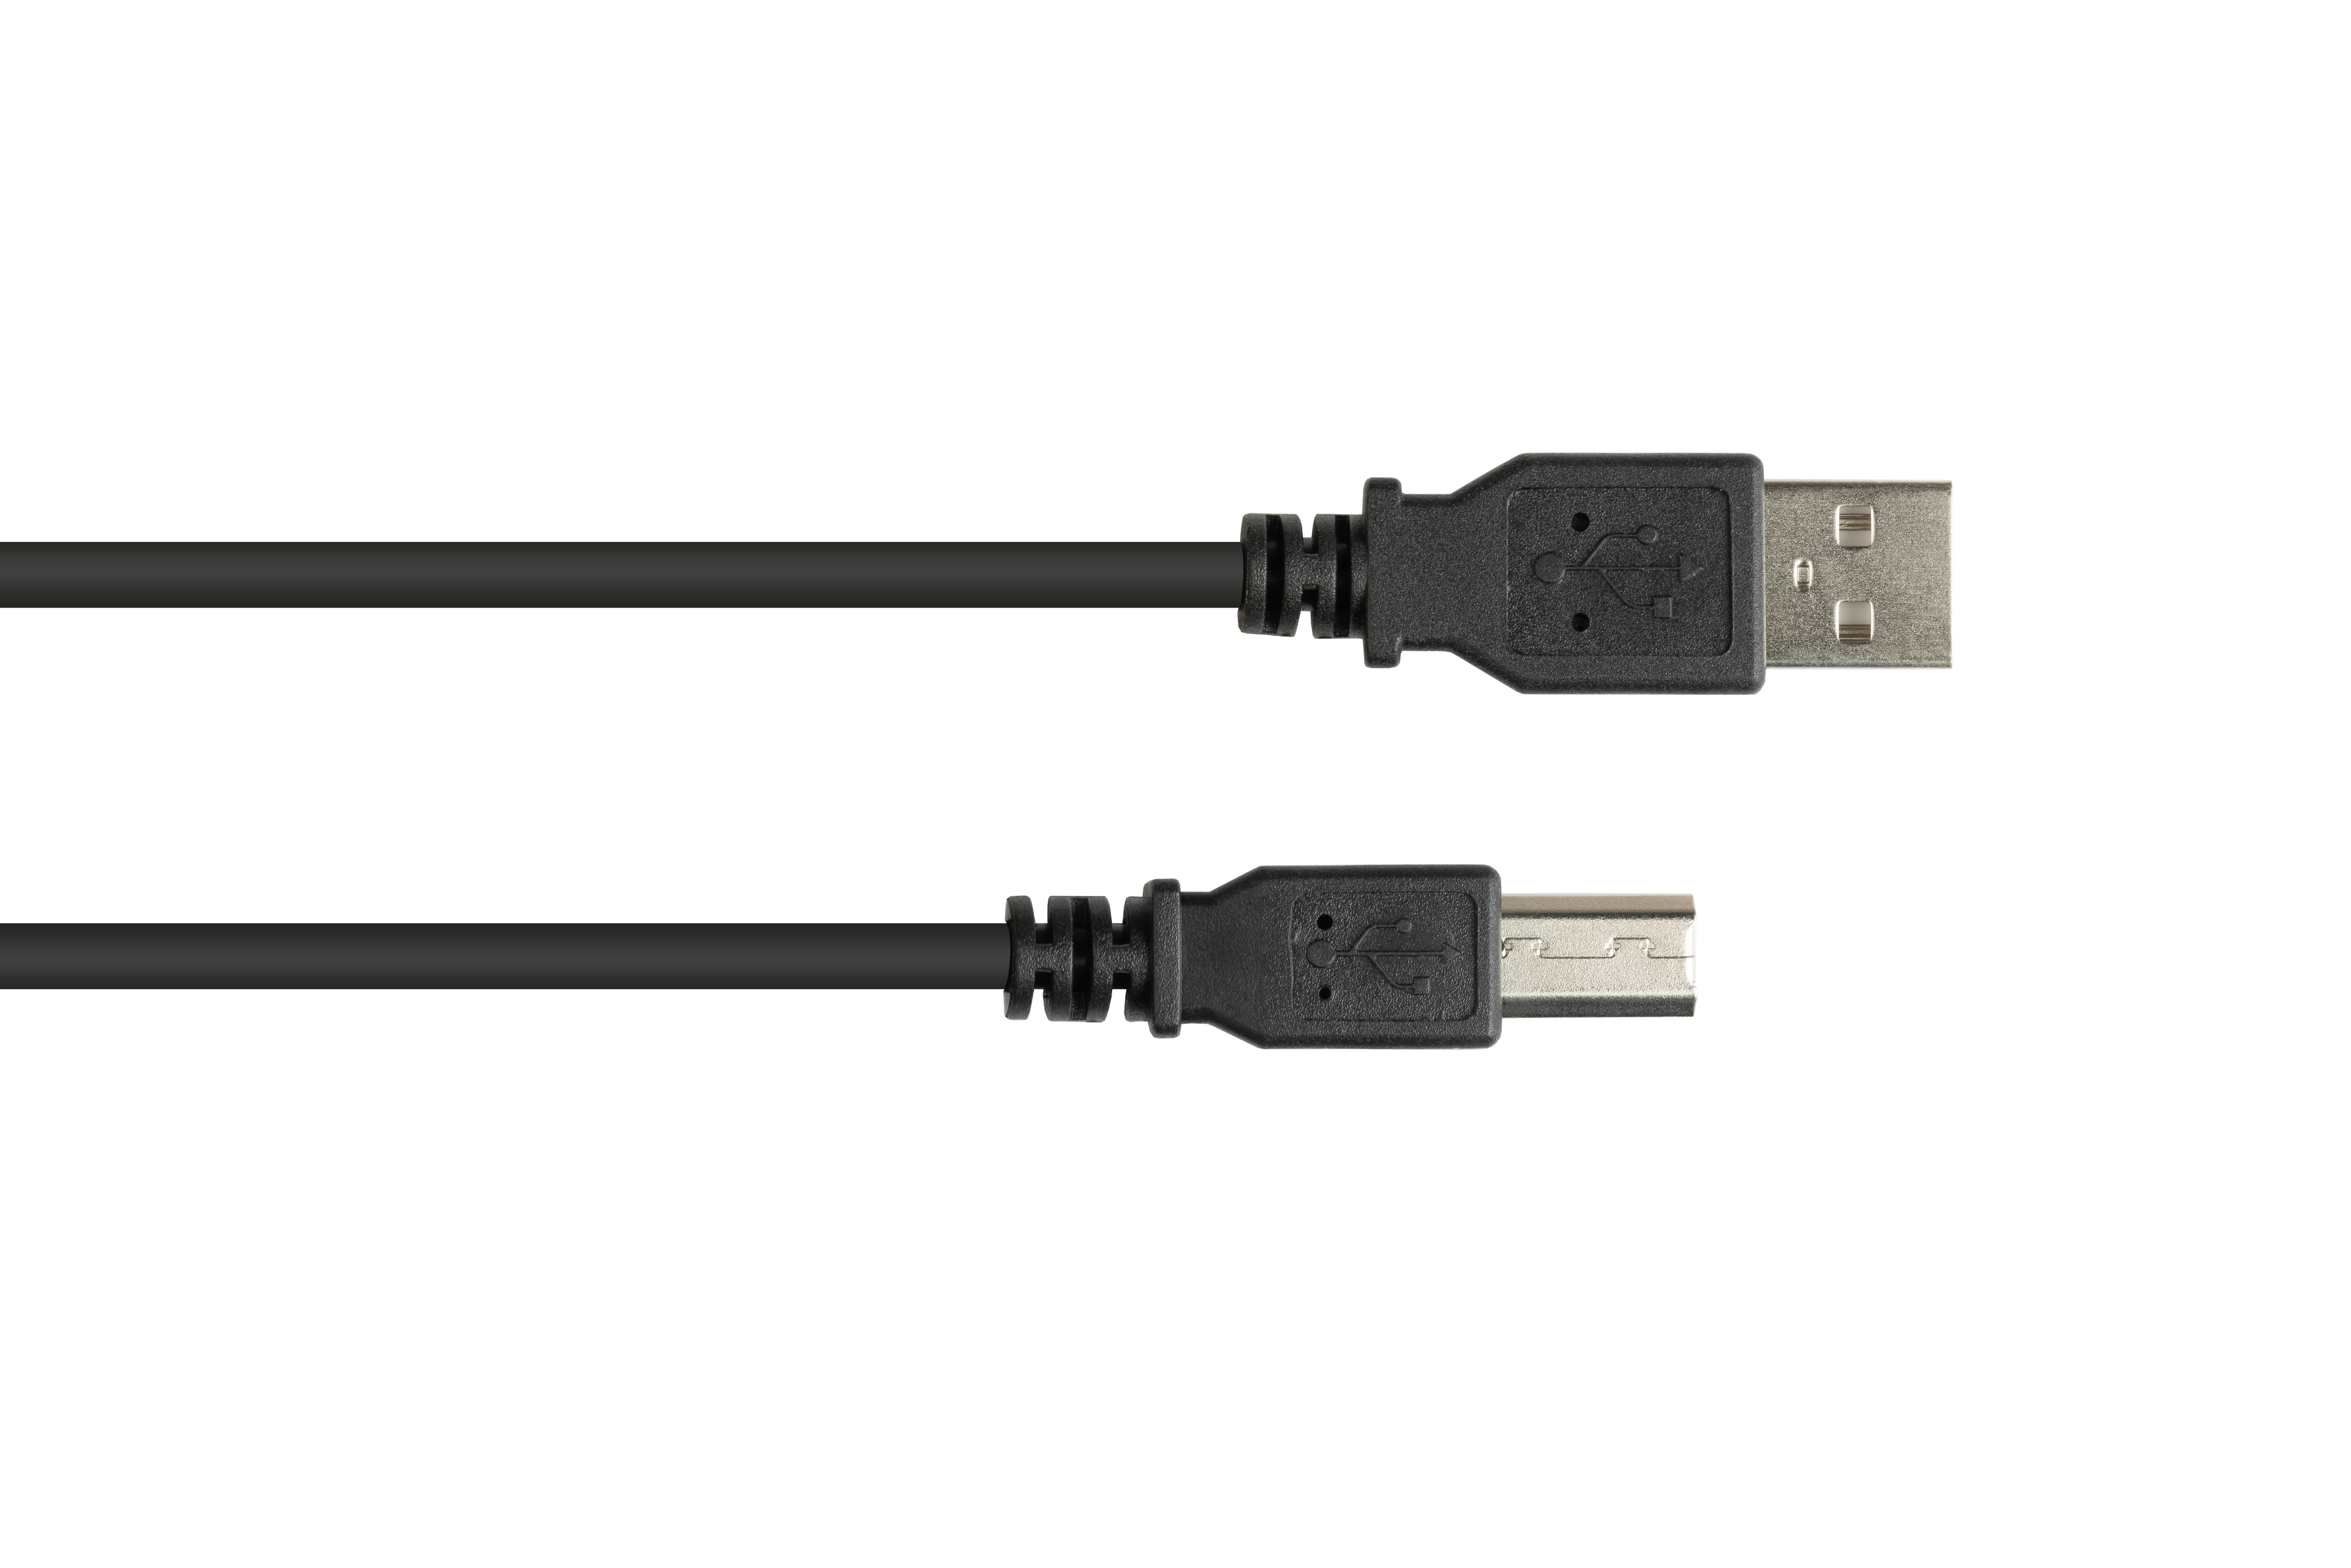 B, an Anschlusskabel schwarz 2.0 Stecker KABELMEISTER A Stecker USB EASY